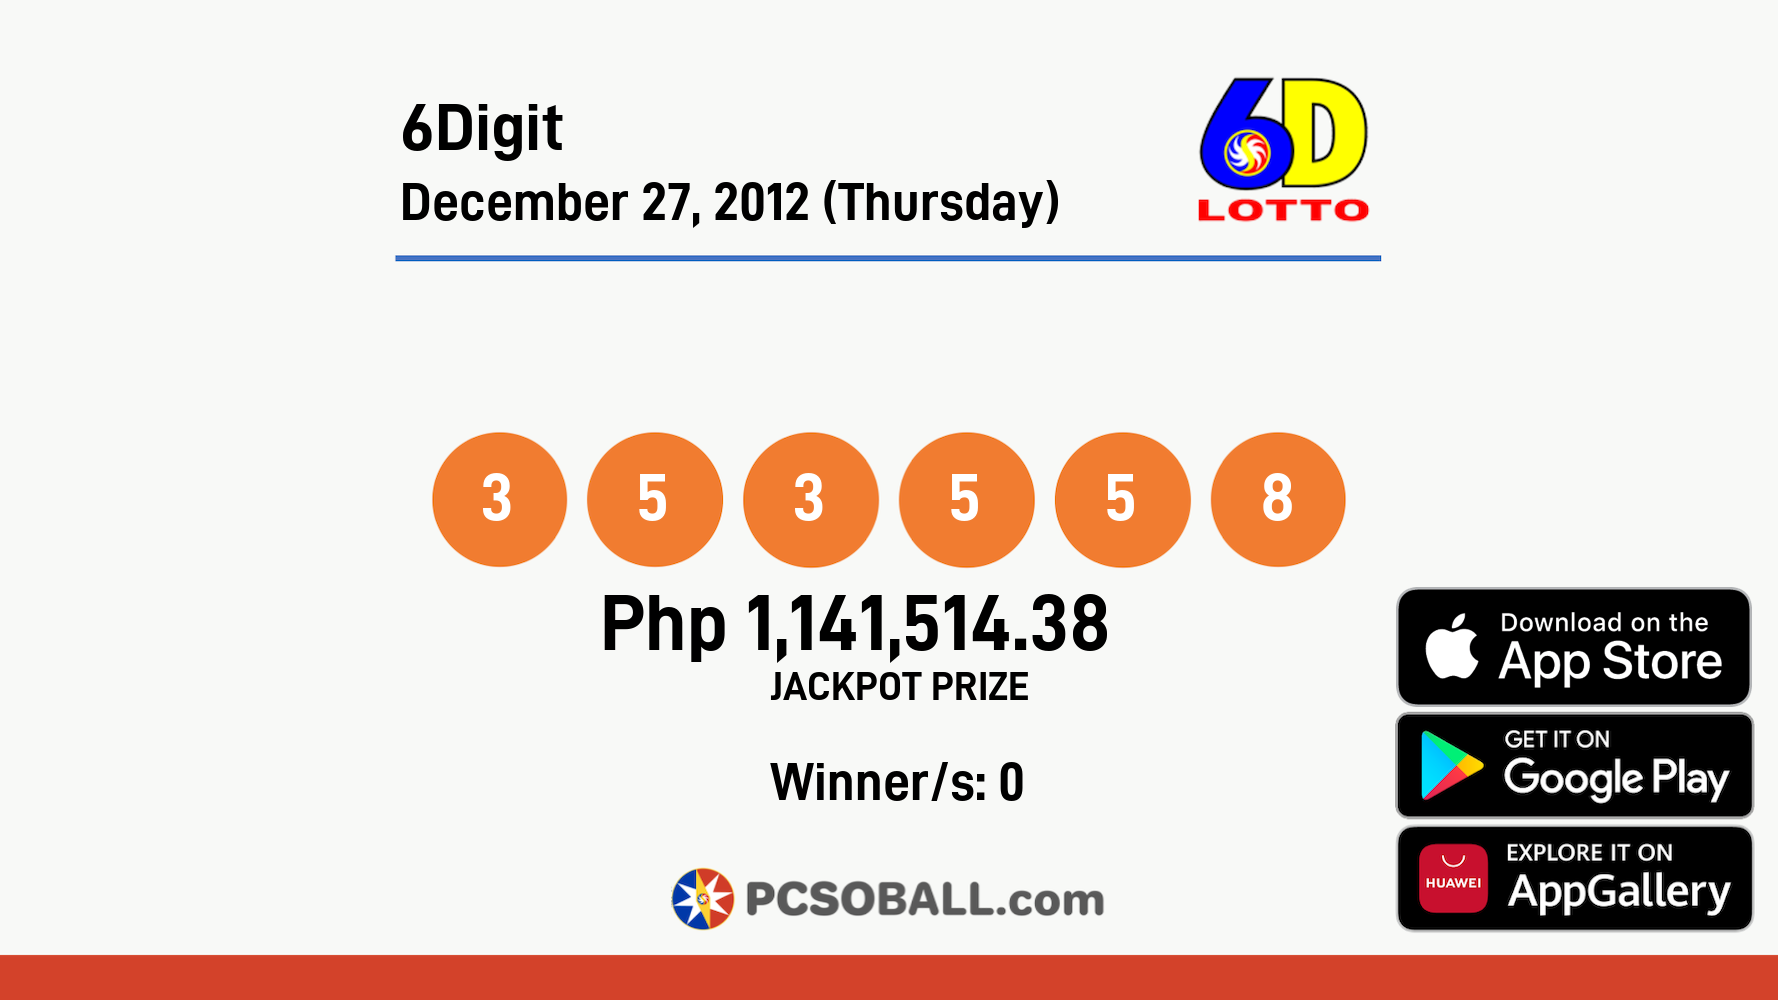 6Digit December 27, 2012 (Thursday) Result